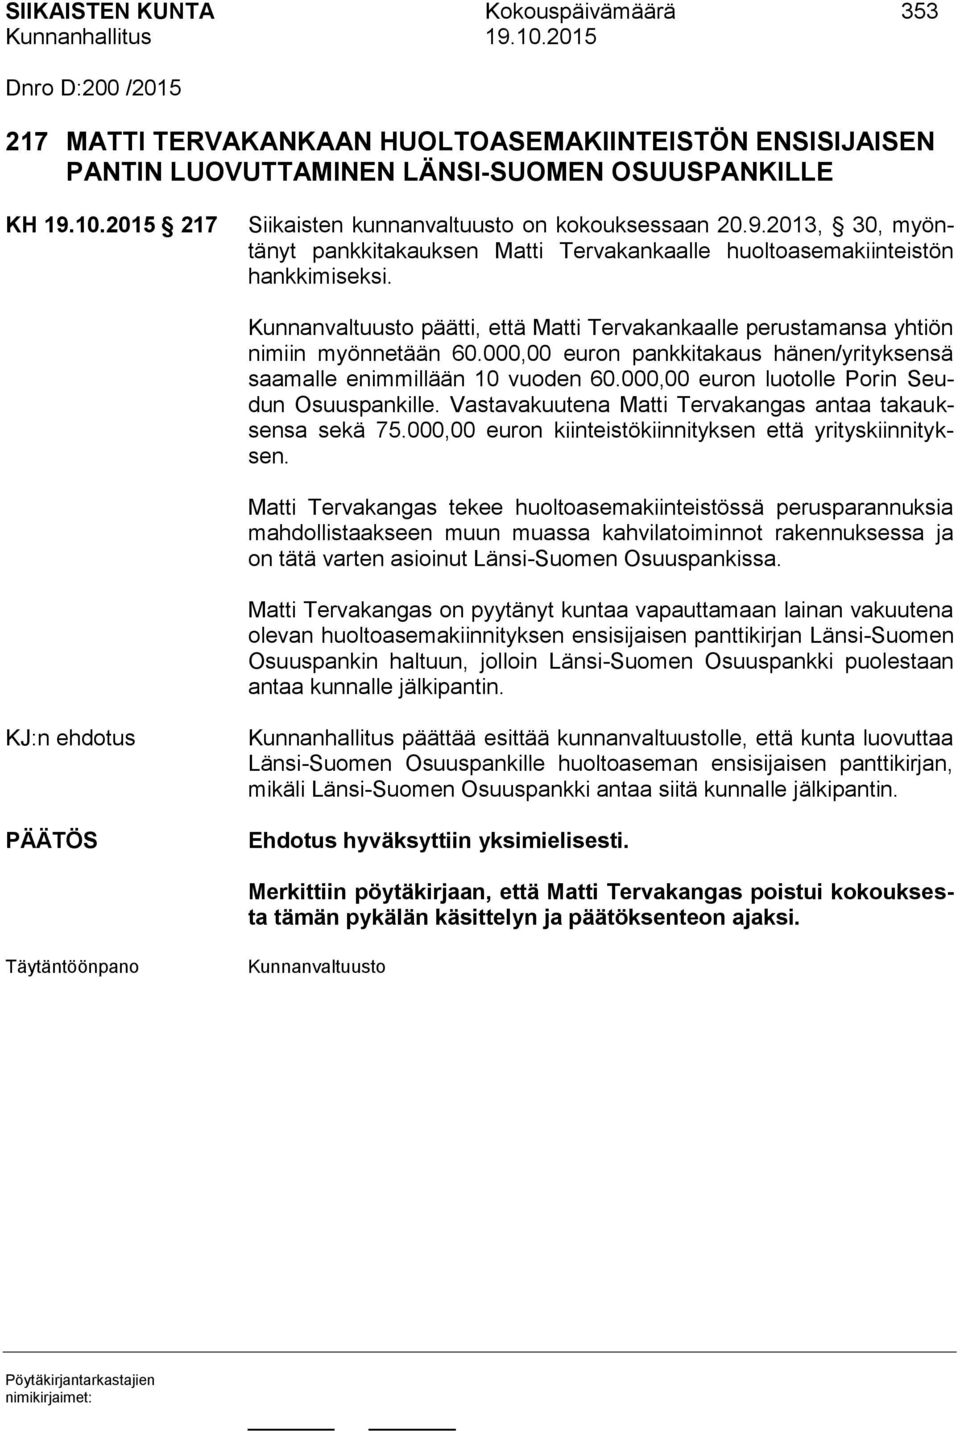 Kunnanvaltuusto päätti, että Matti Tervakankaalle perustamansa yhtiön nimiin myönnetään 60.000,00 euron pankkitakaus hänen/yrityksensä saamalle enimmillään 10 vuoden 60.